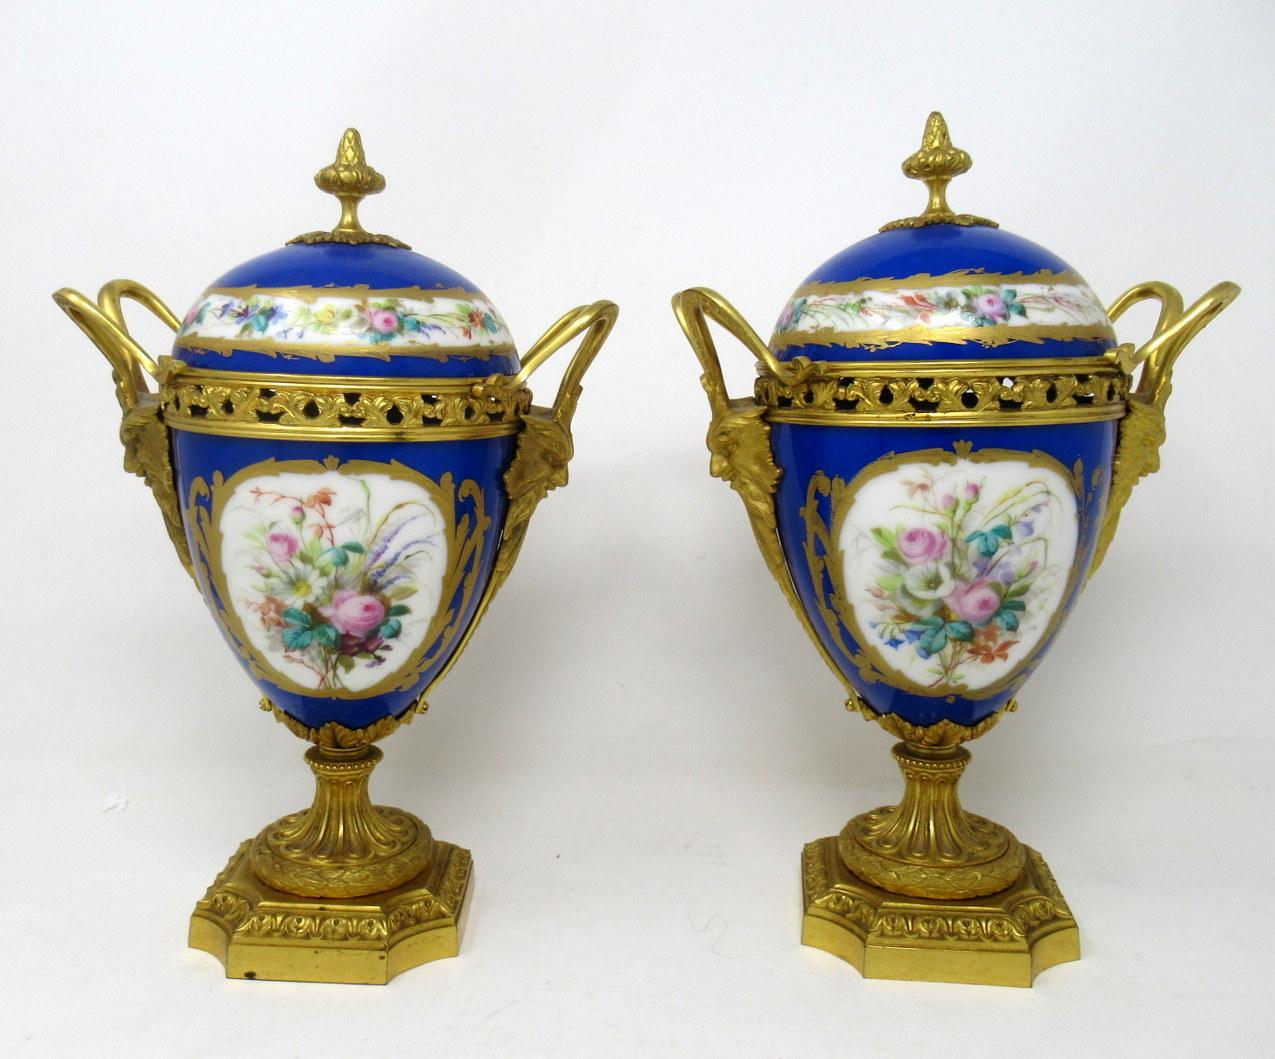 French Antique Pair of Sèvres Porcelain Still Life Ormolu Cobalt Blue Urns Vases